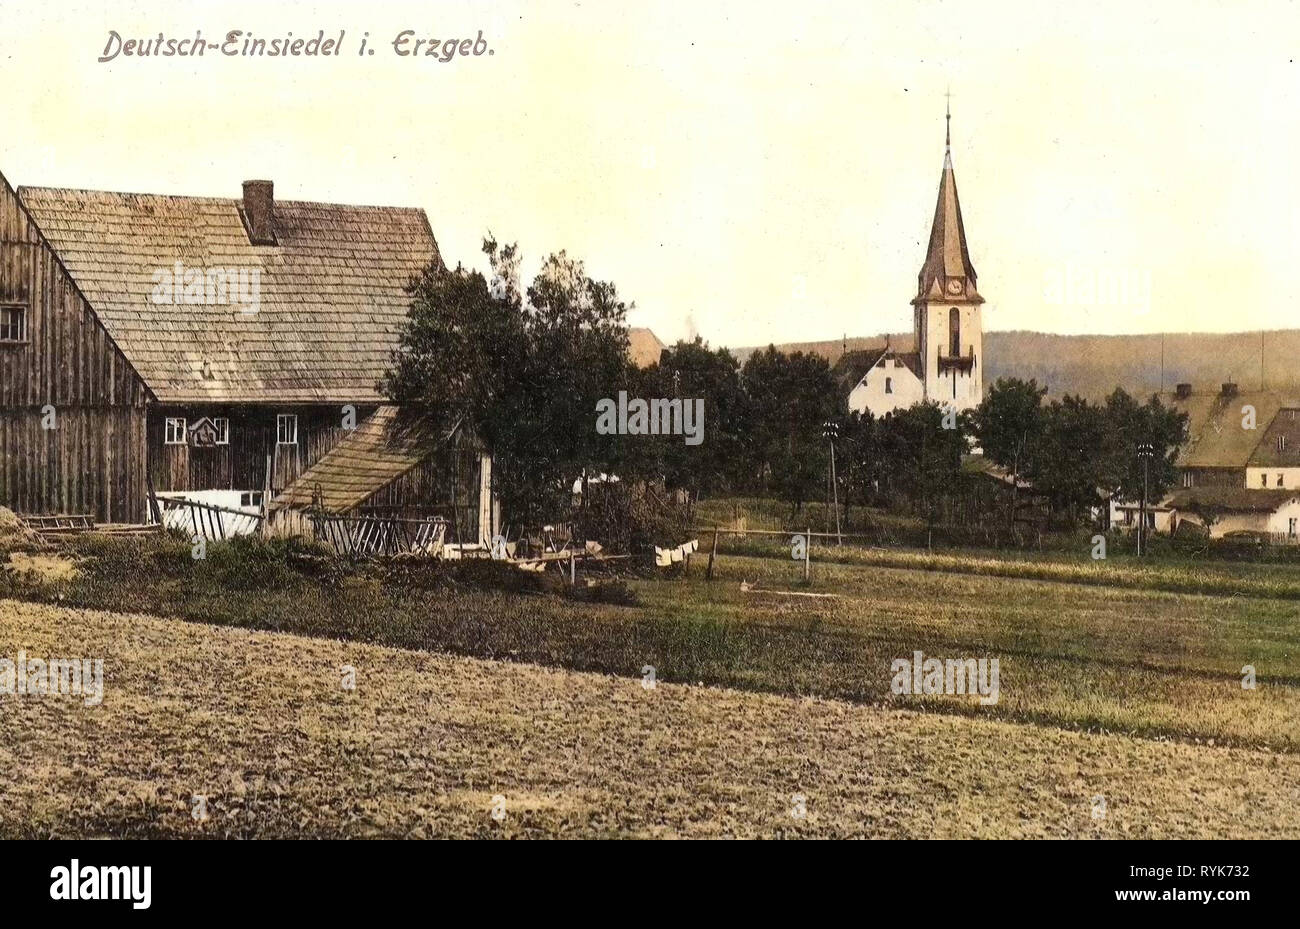 Buildings in Erzgebirgskreis, Deutscheinsiedel, 1919, Erzgebirgskreis, Deutsch, Einsiedel, Germany Stock Photo